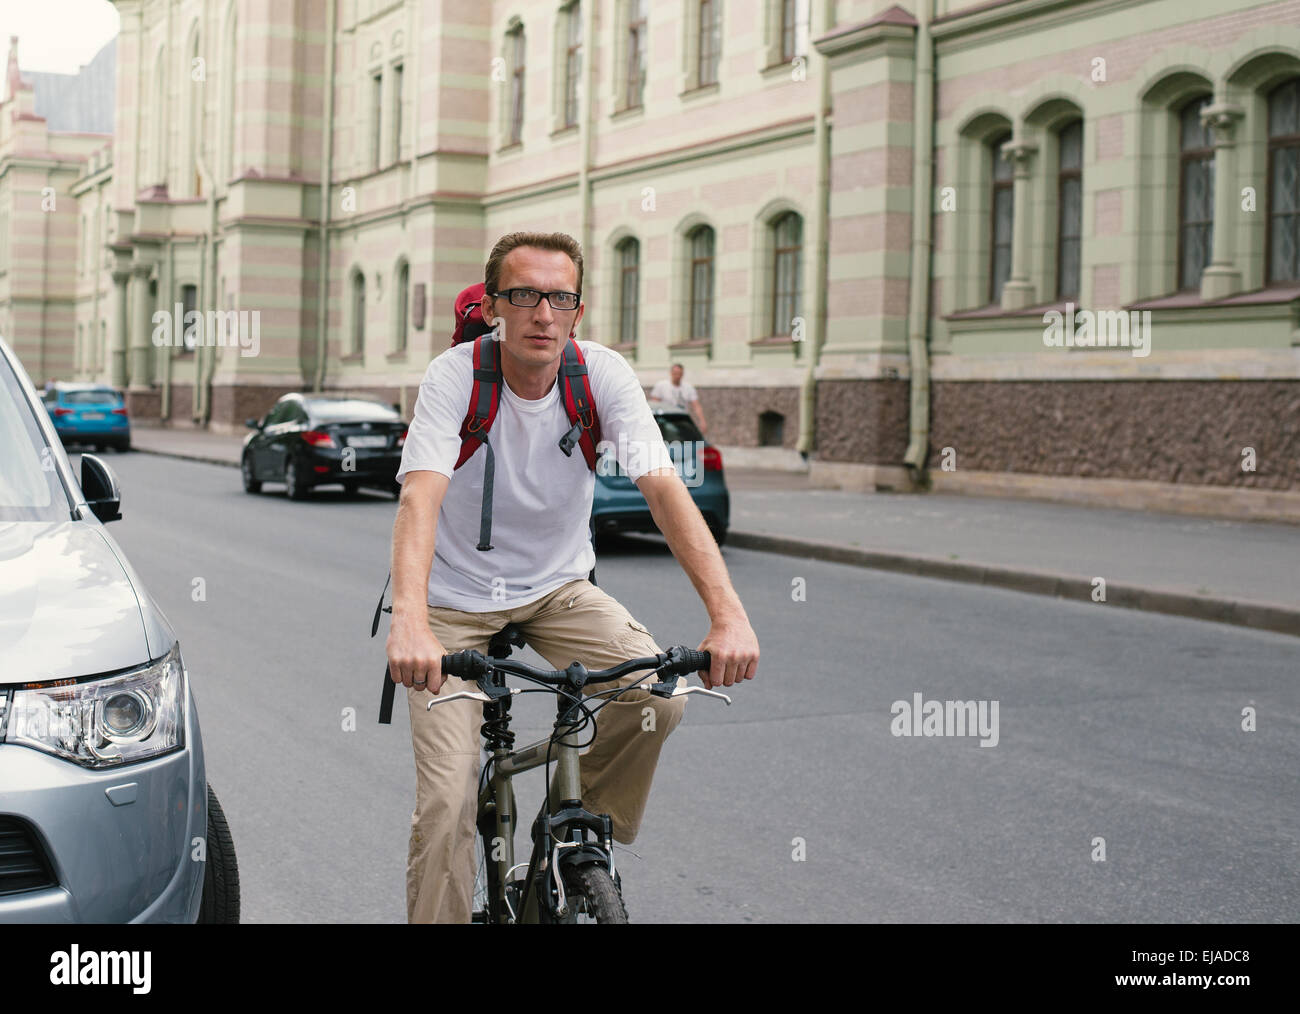 Tourist uomo su una bicicletta in una strada di città Foto Stock